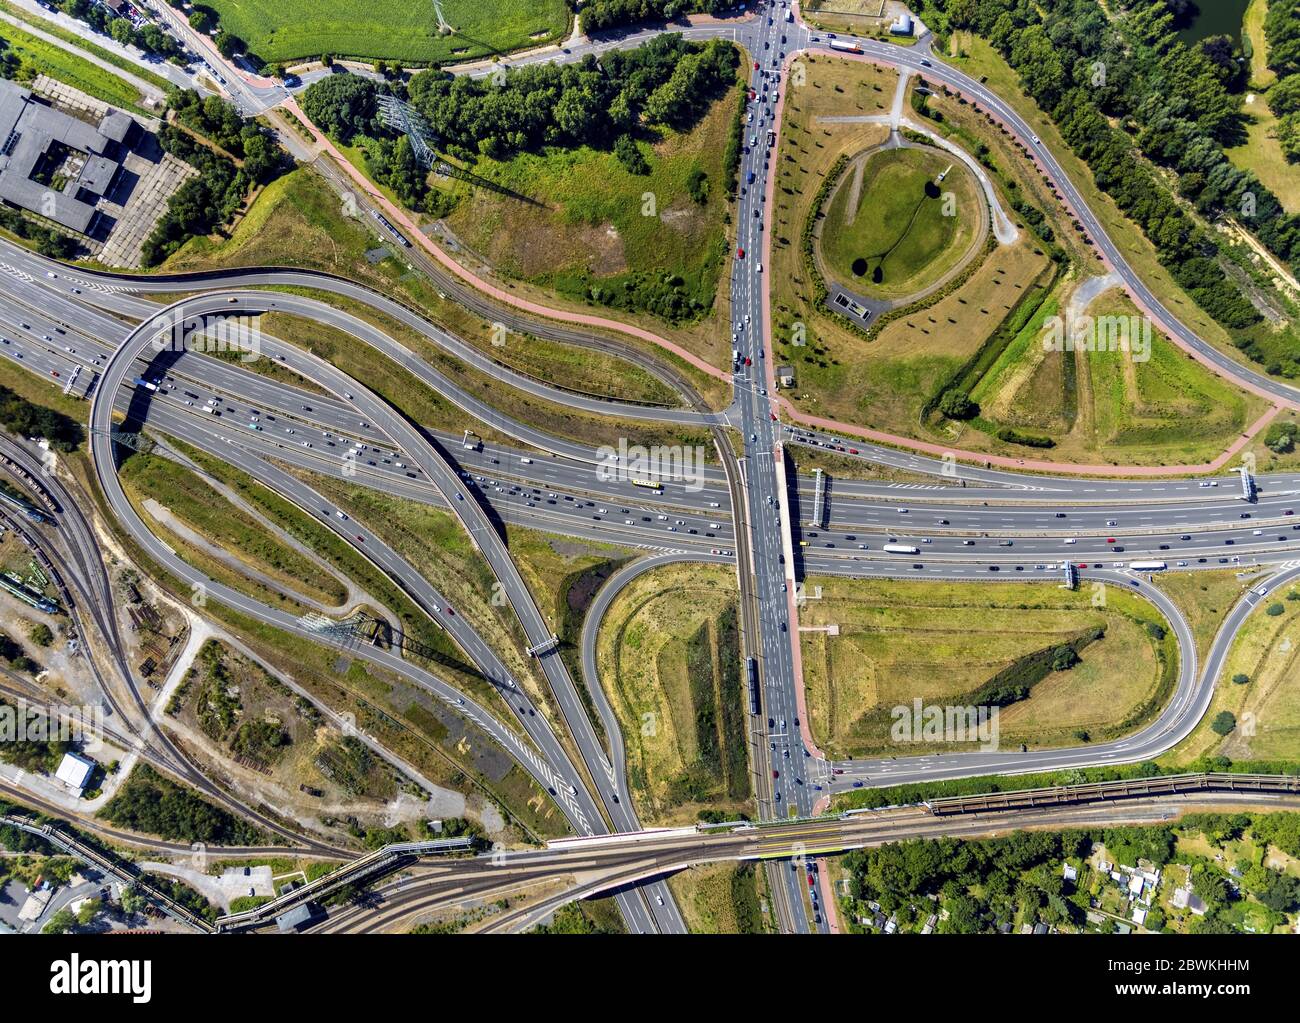 Autobahndreieck Bochum Ovest, svincolo autostradale Bochum Ovest della A448 e A40, 22.07.2019, vista aerea, Germania, Renania Settentrionale-Vestfalia, Ruhr Area, Bochum Foto Stock